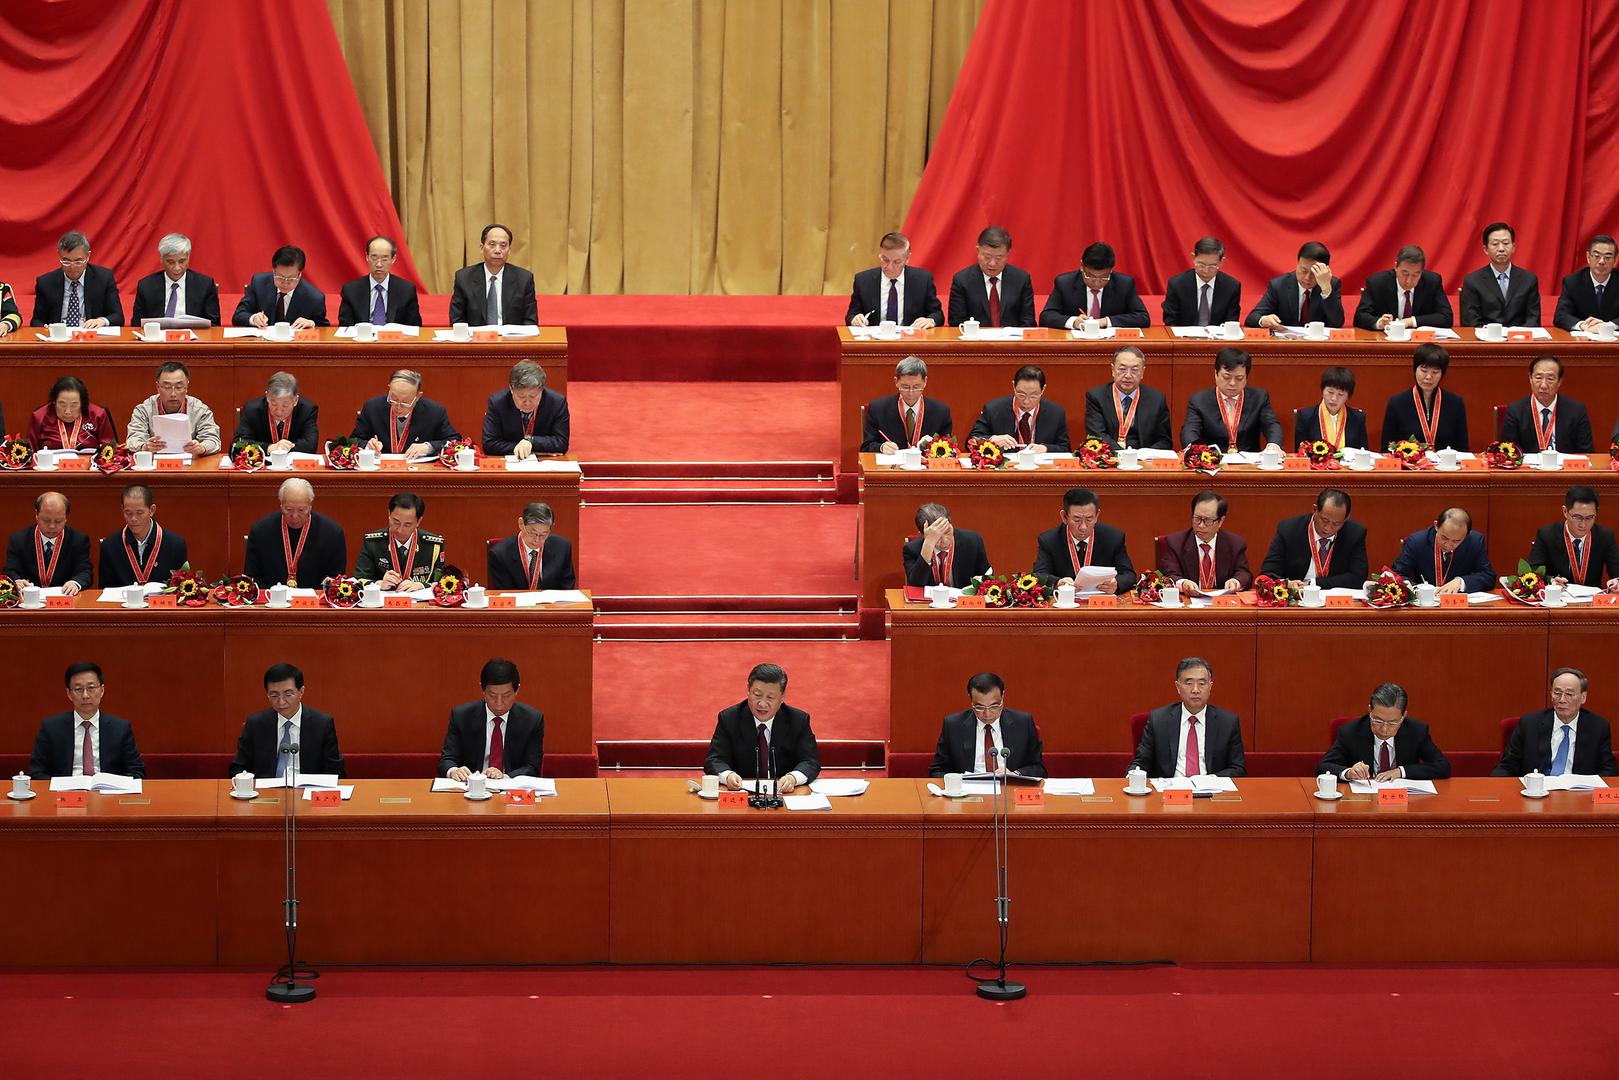 الرئيس الصيني شي جين بينغ يلقي خطابا بمناسبة "الذكرى الـ 40 للإصلاح والانفتاح" في "قاعة الشعب العظيمة" في 18 ديسمبر/كانون الأول 2018 في بكين، الصين. 